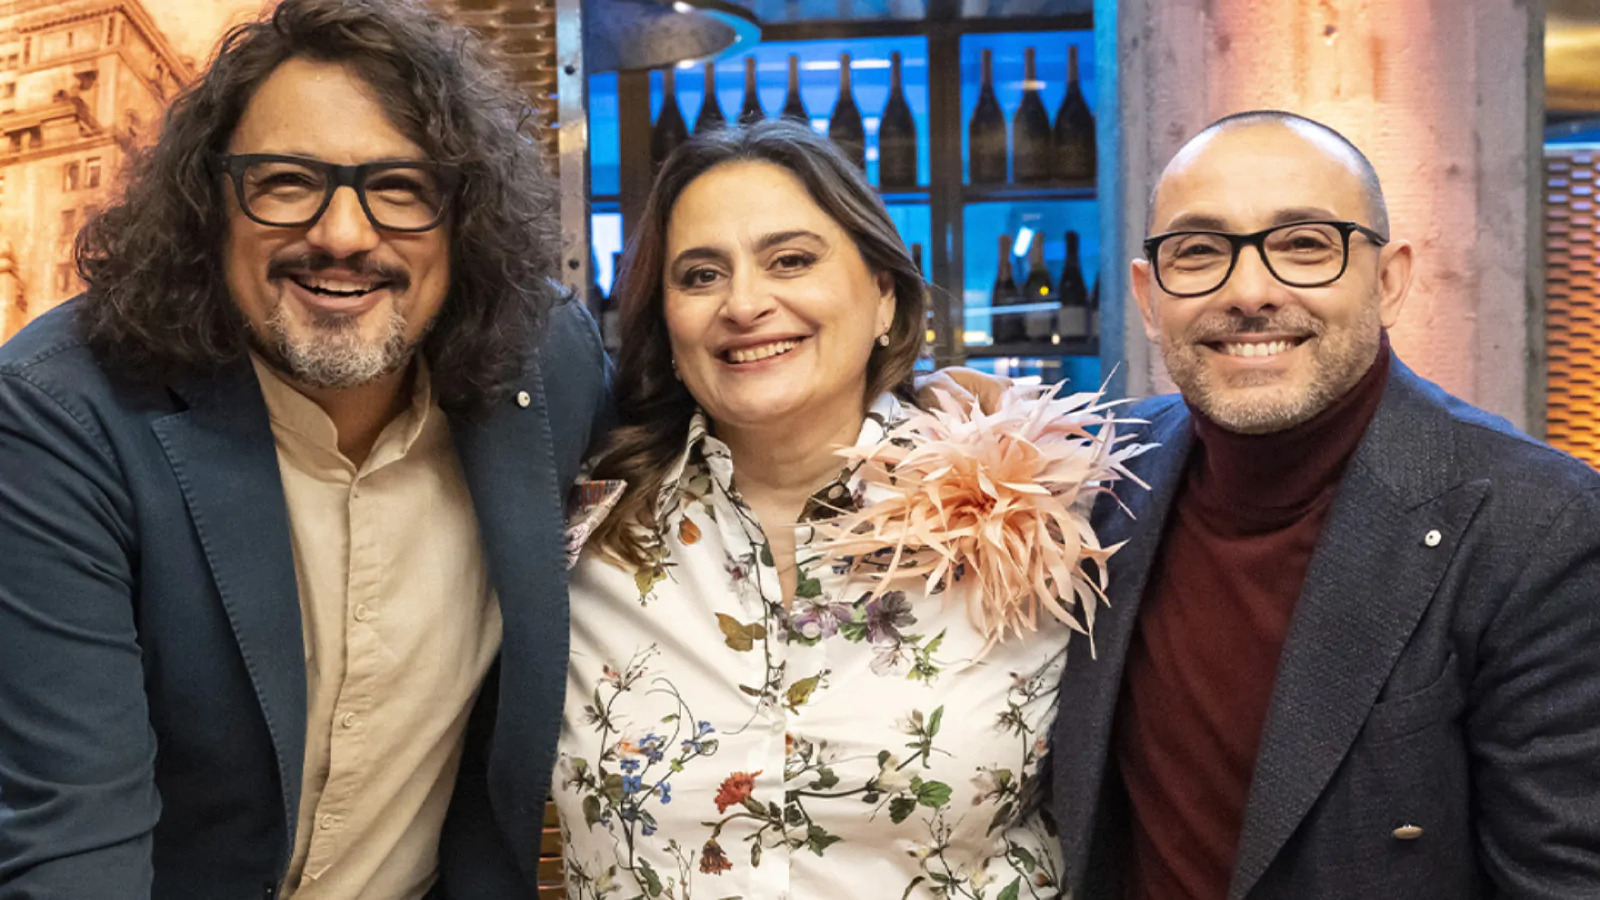 Alessandro Borghese Celebrity Chef, torna stasera su TV8: ospiti e anticipazioni